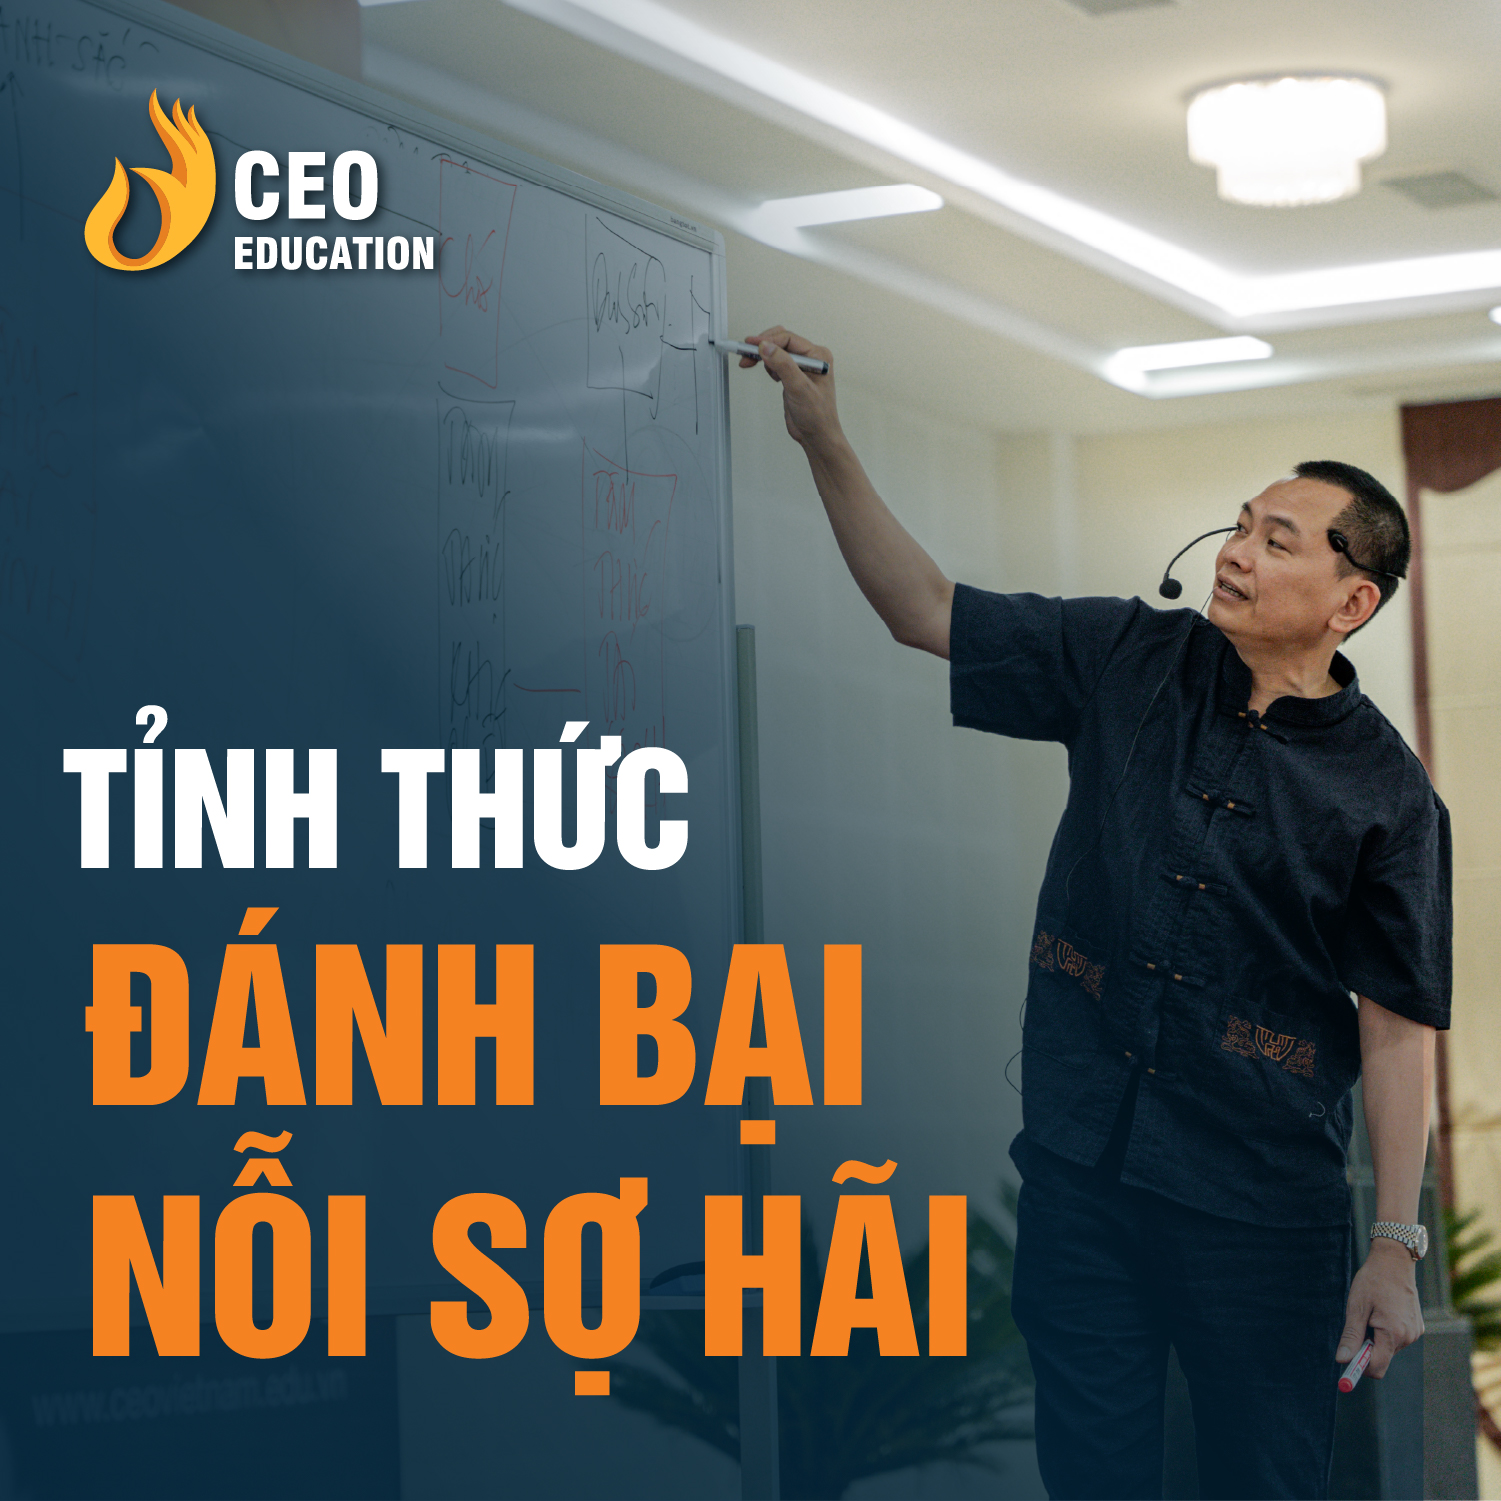 CÁCH TỐT NHẤT ĐỂ VƯỢT QUA NỖI SỢ HÃI | Ngô Minh Tuấn | Học Viện CEO Việt Nam